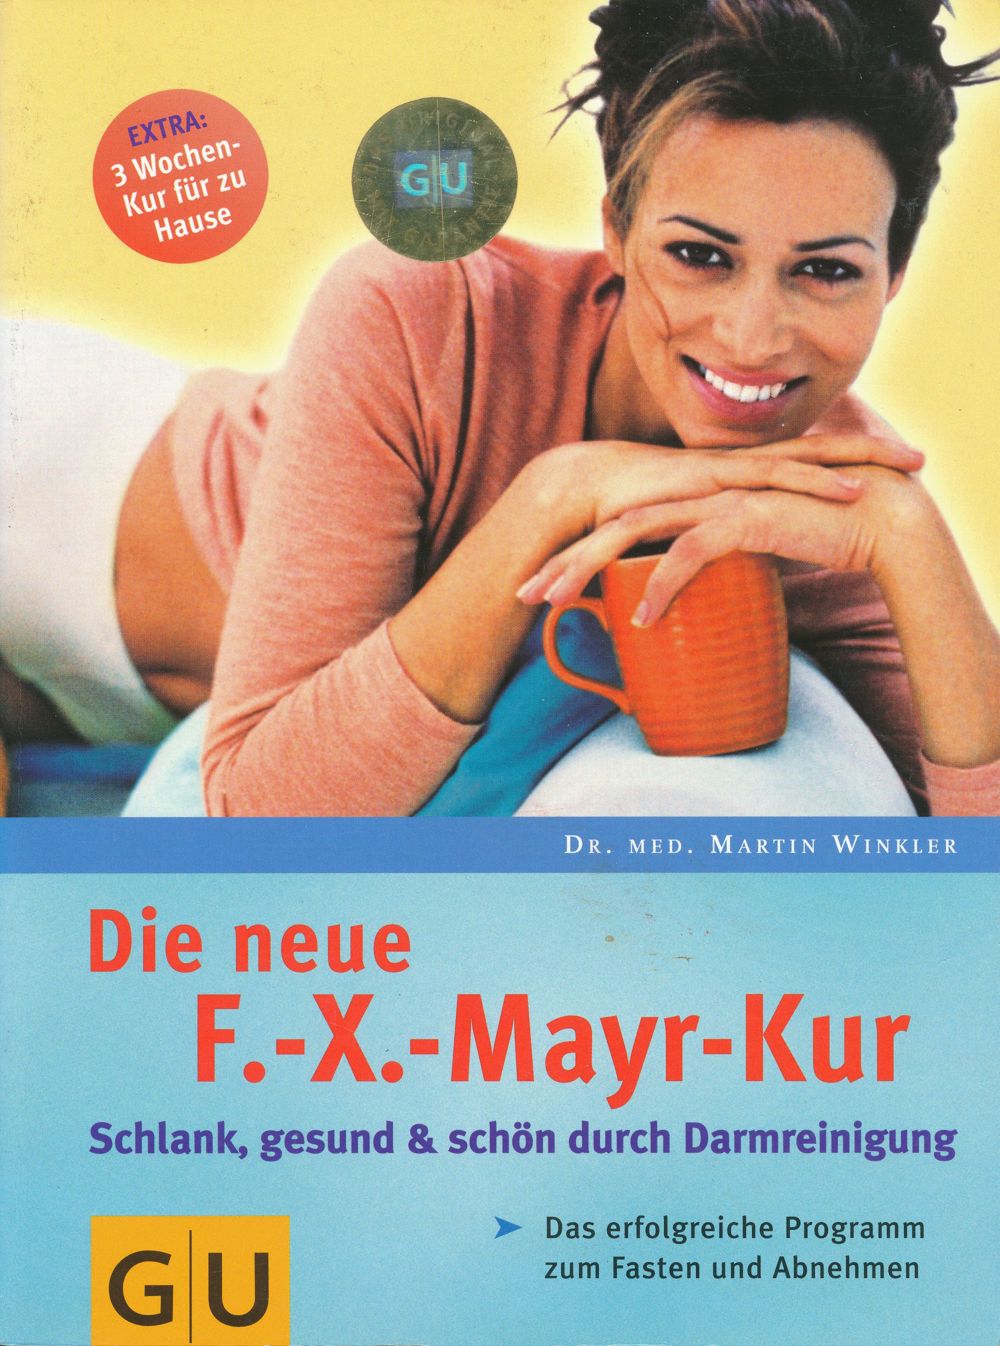 F. -X.- Mayr-Kur, Buch